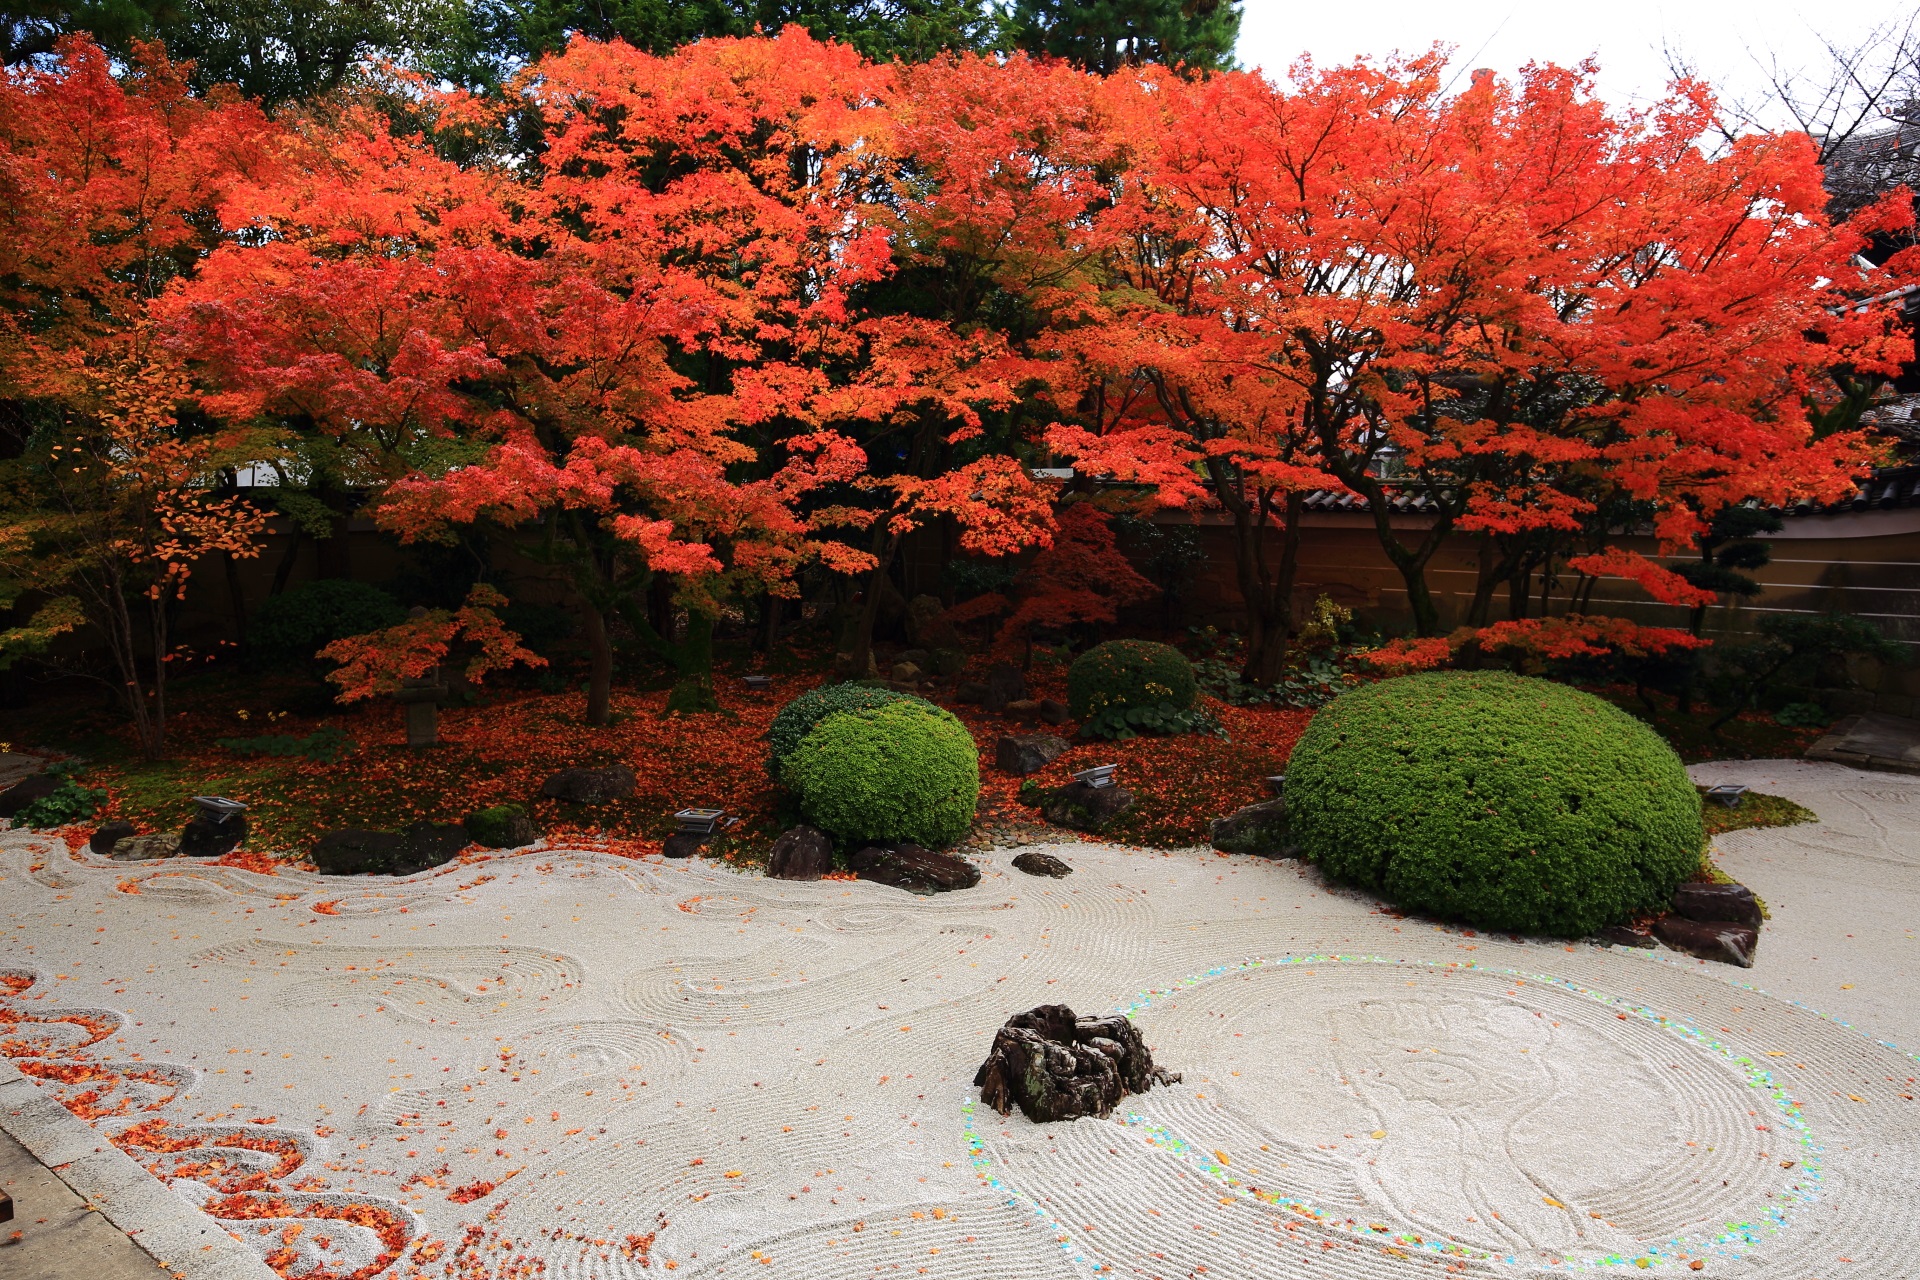 妙顕寺庭園の白砂に映える鮮やかな炎のような紅葉